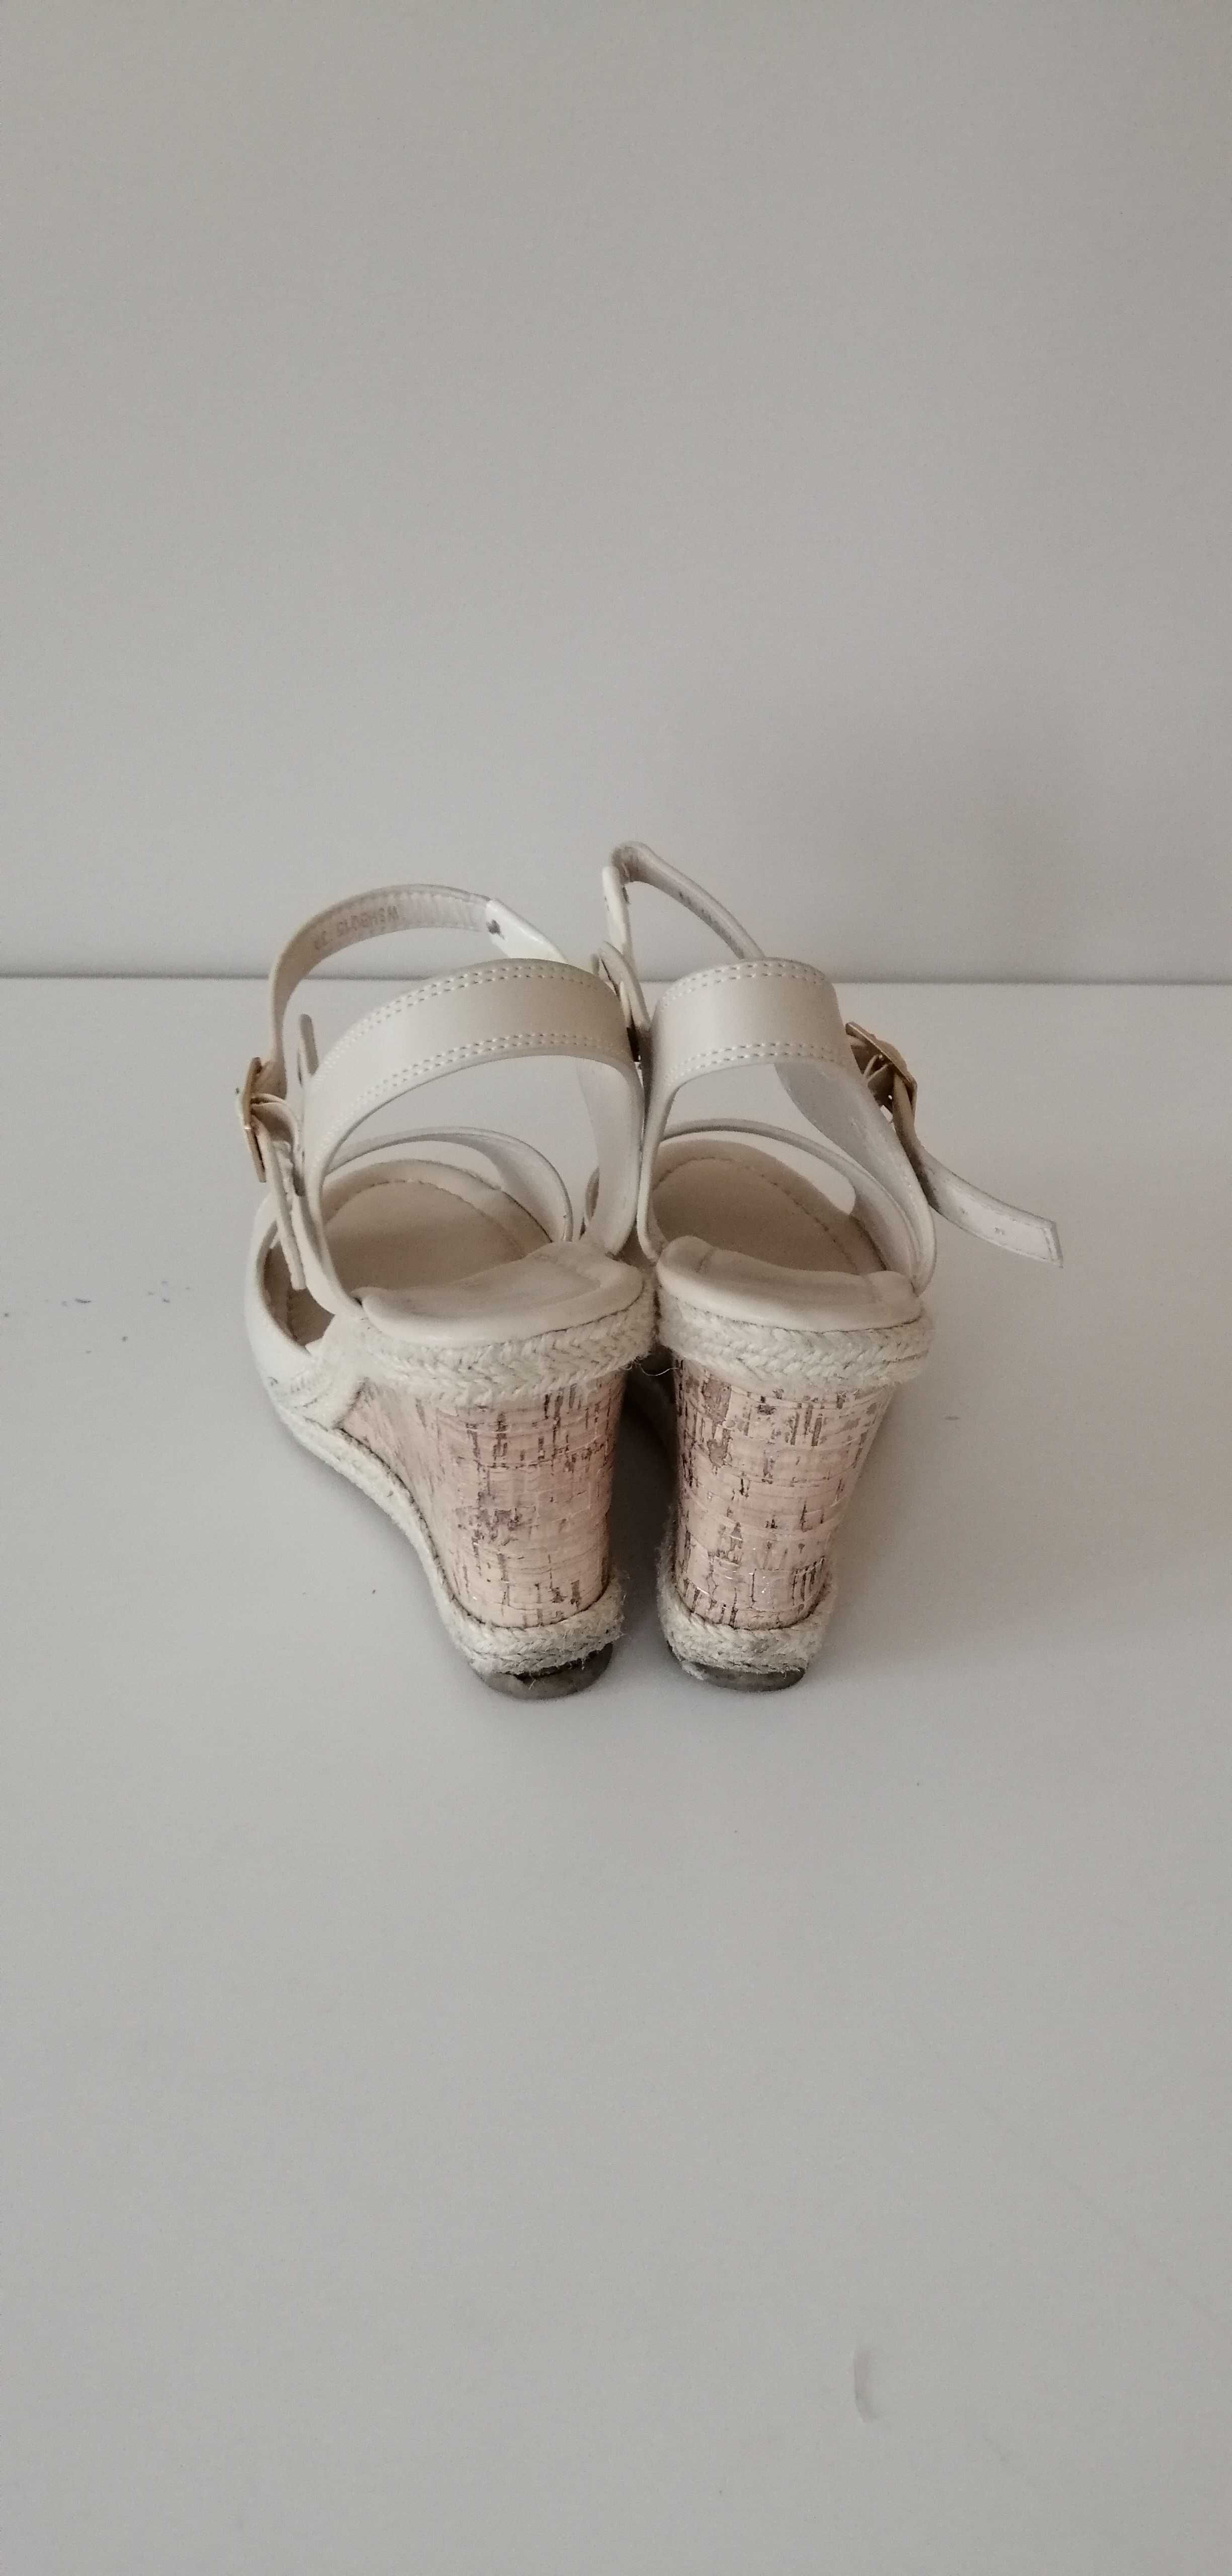 kremowe beżowe sandały na koturnie espadryle 39 letnie białe